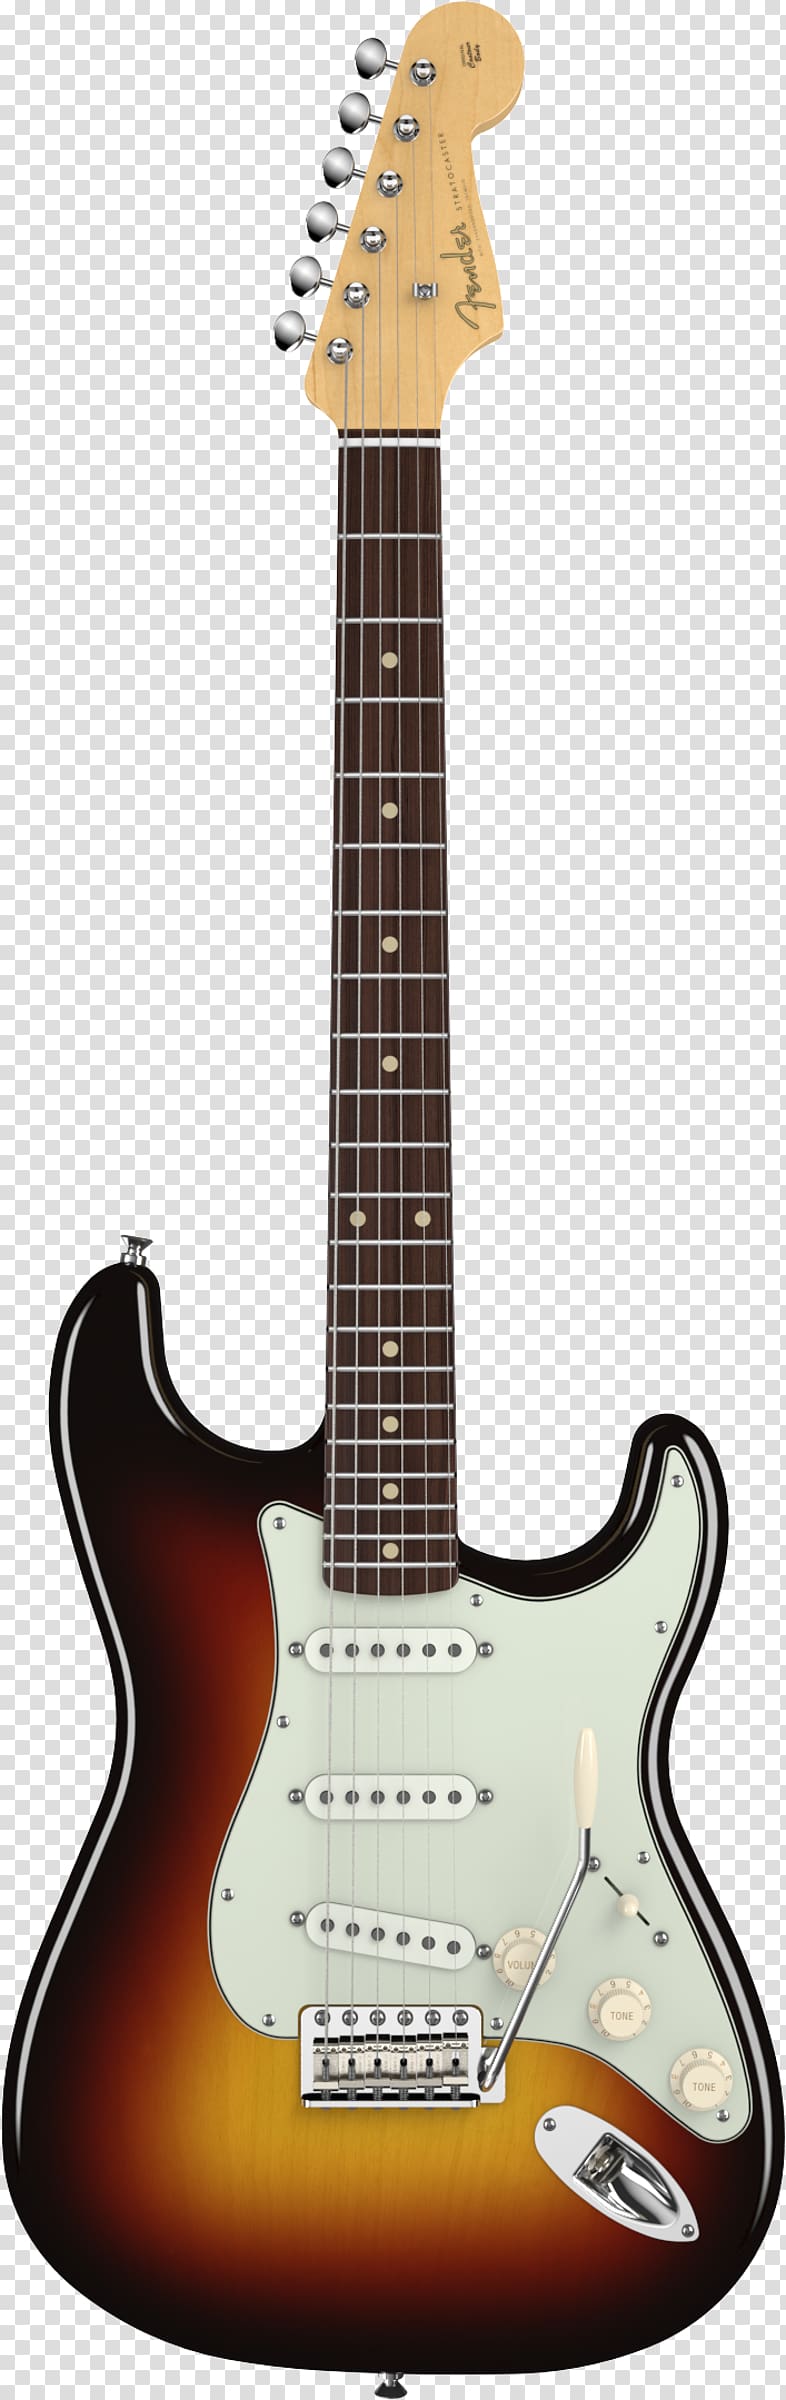 Fender Stratocaster Fender Bullet Fender Musical Instruments Corporation Guitar Sunburst, bass guitar transparent background PNG clipart